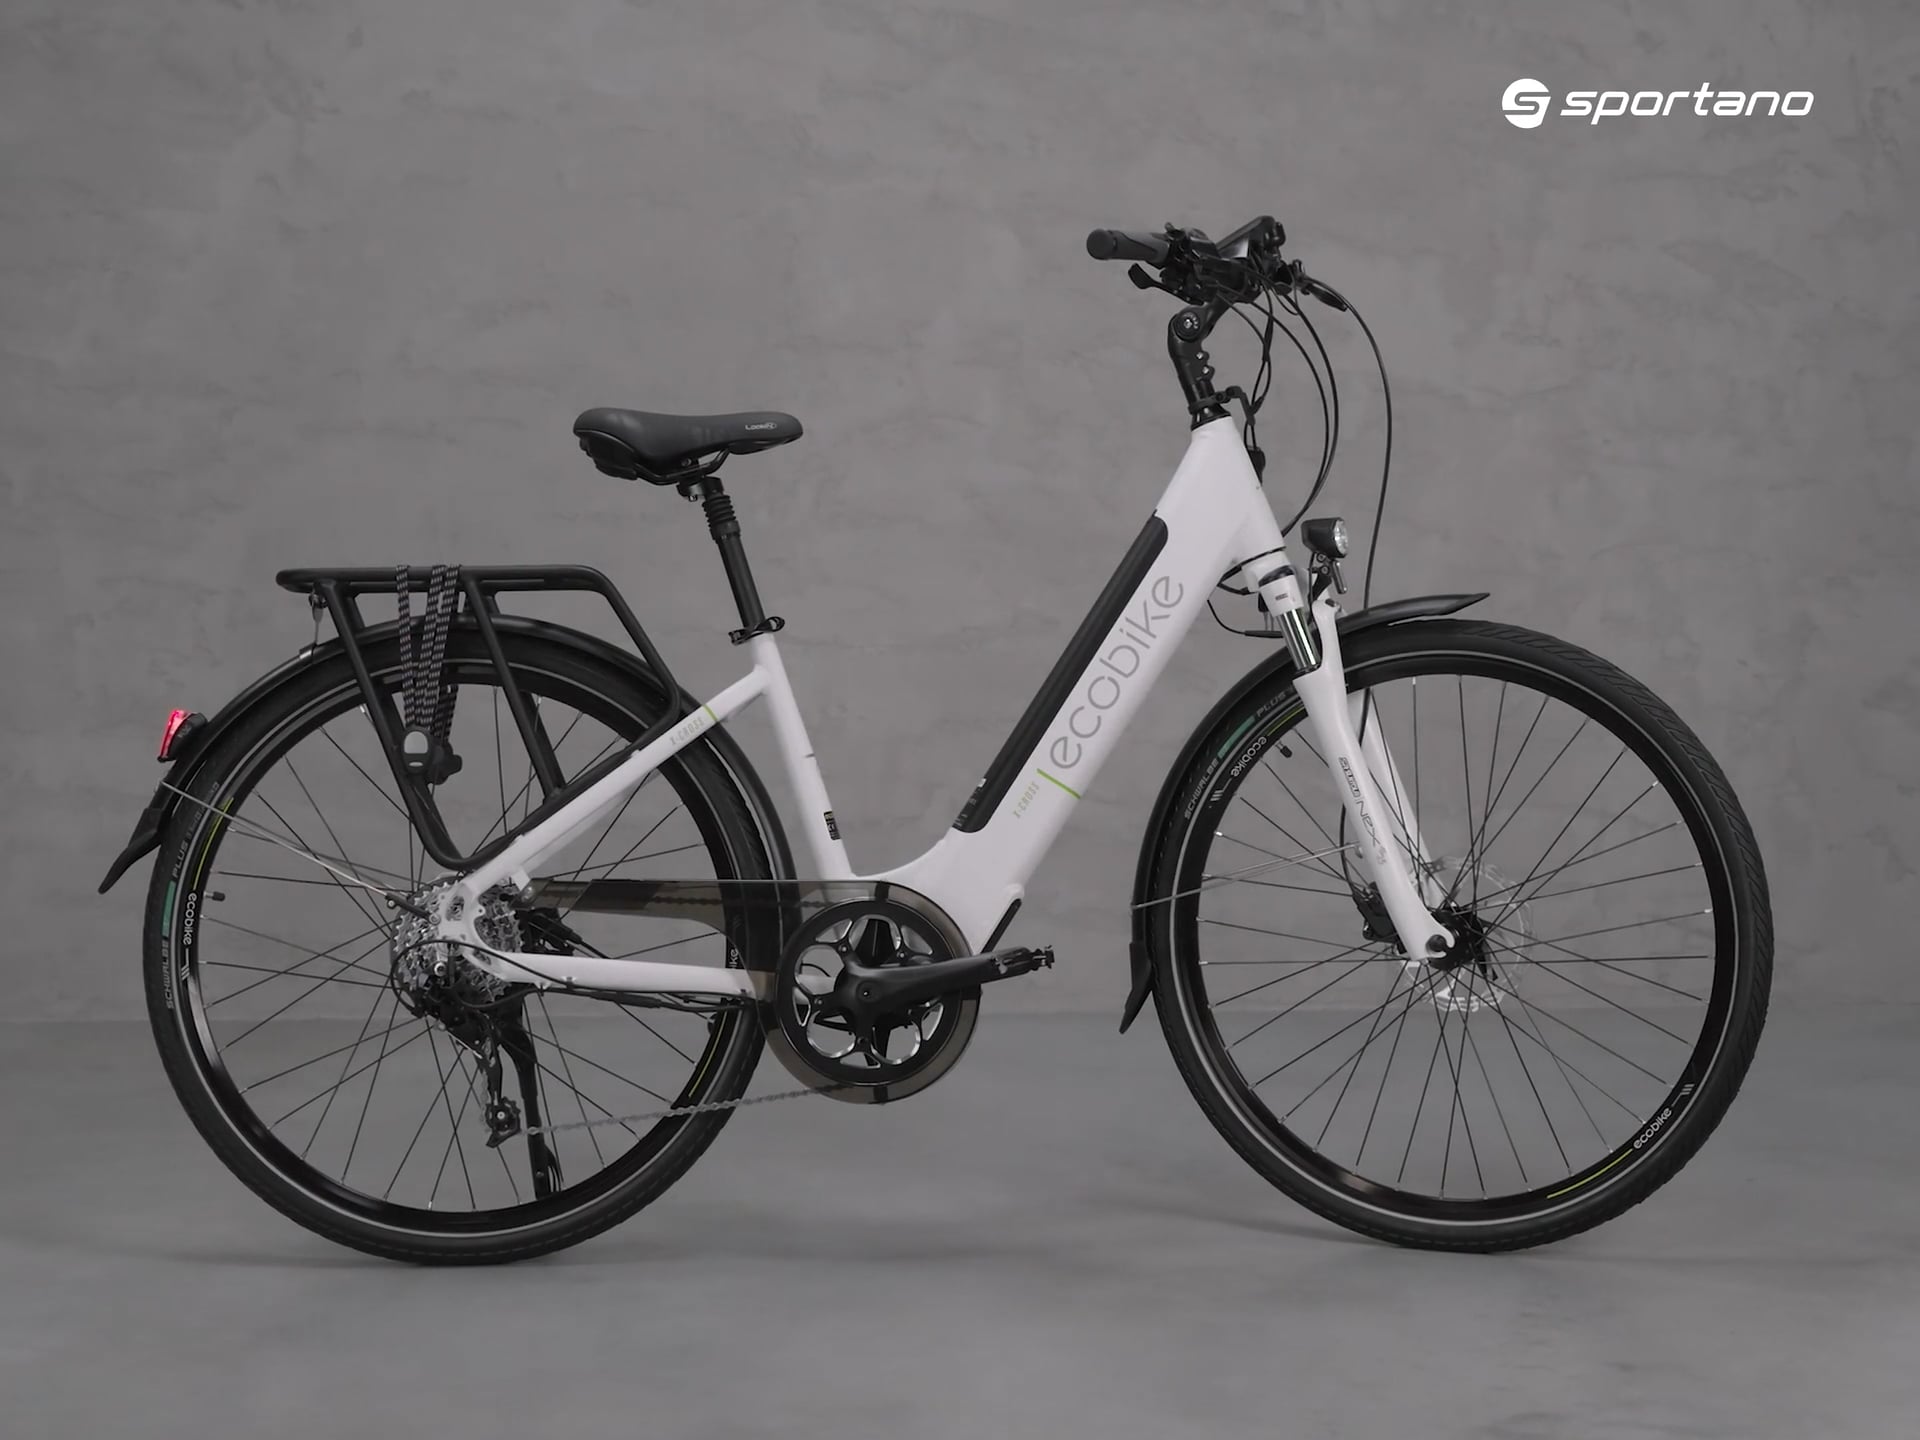 Ecobike X-Cross L/17.5Ah LG електрически велосипед бял 1010301